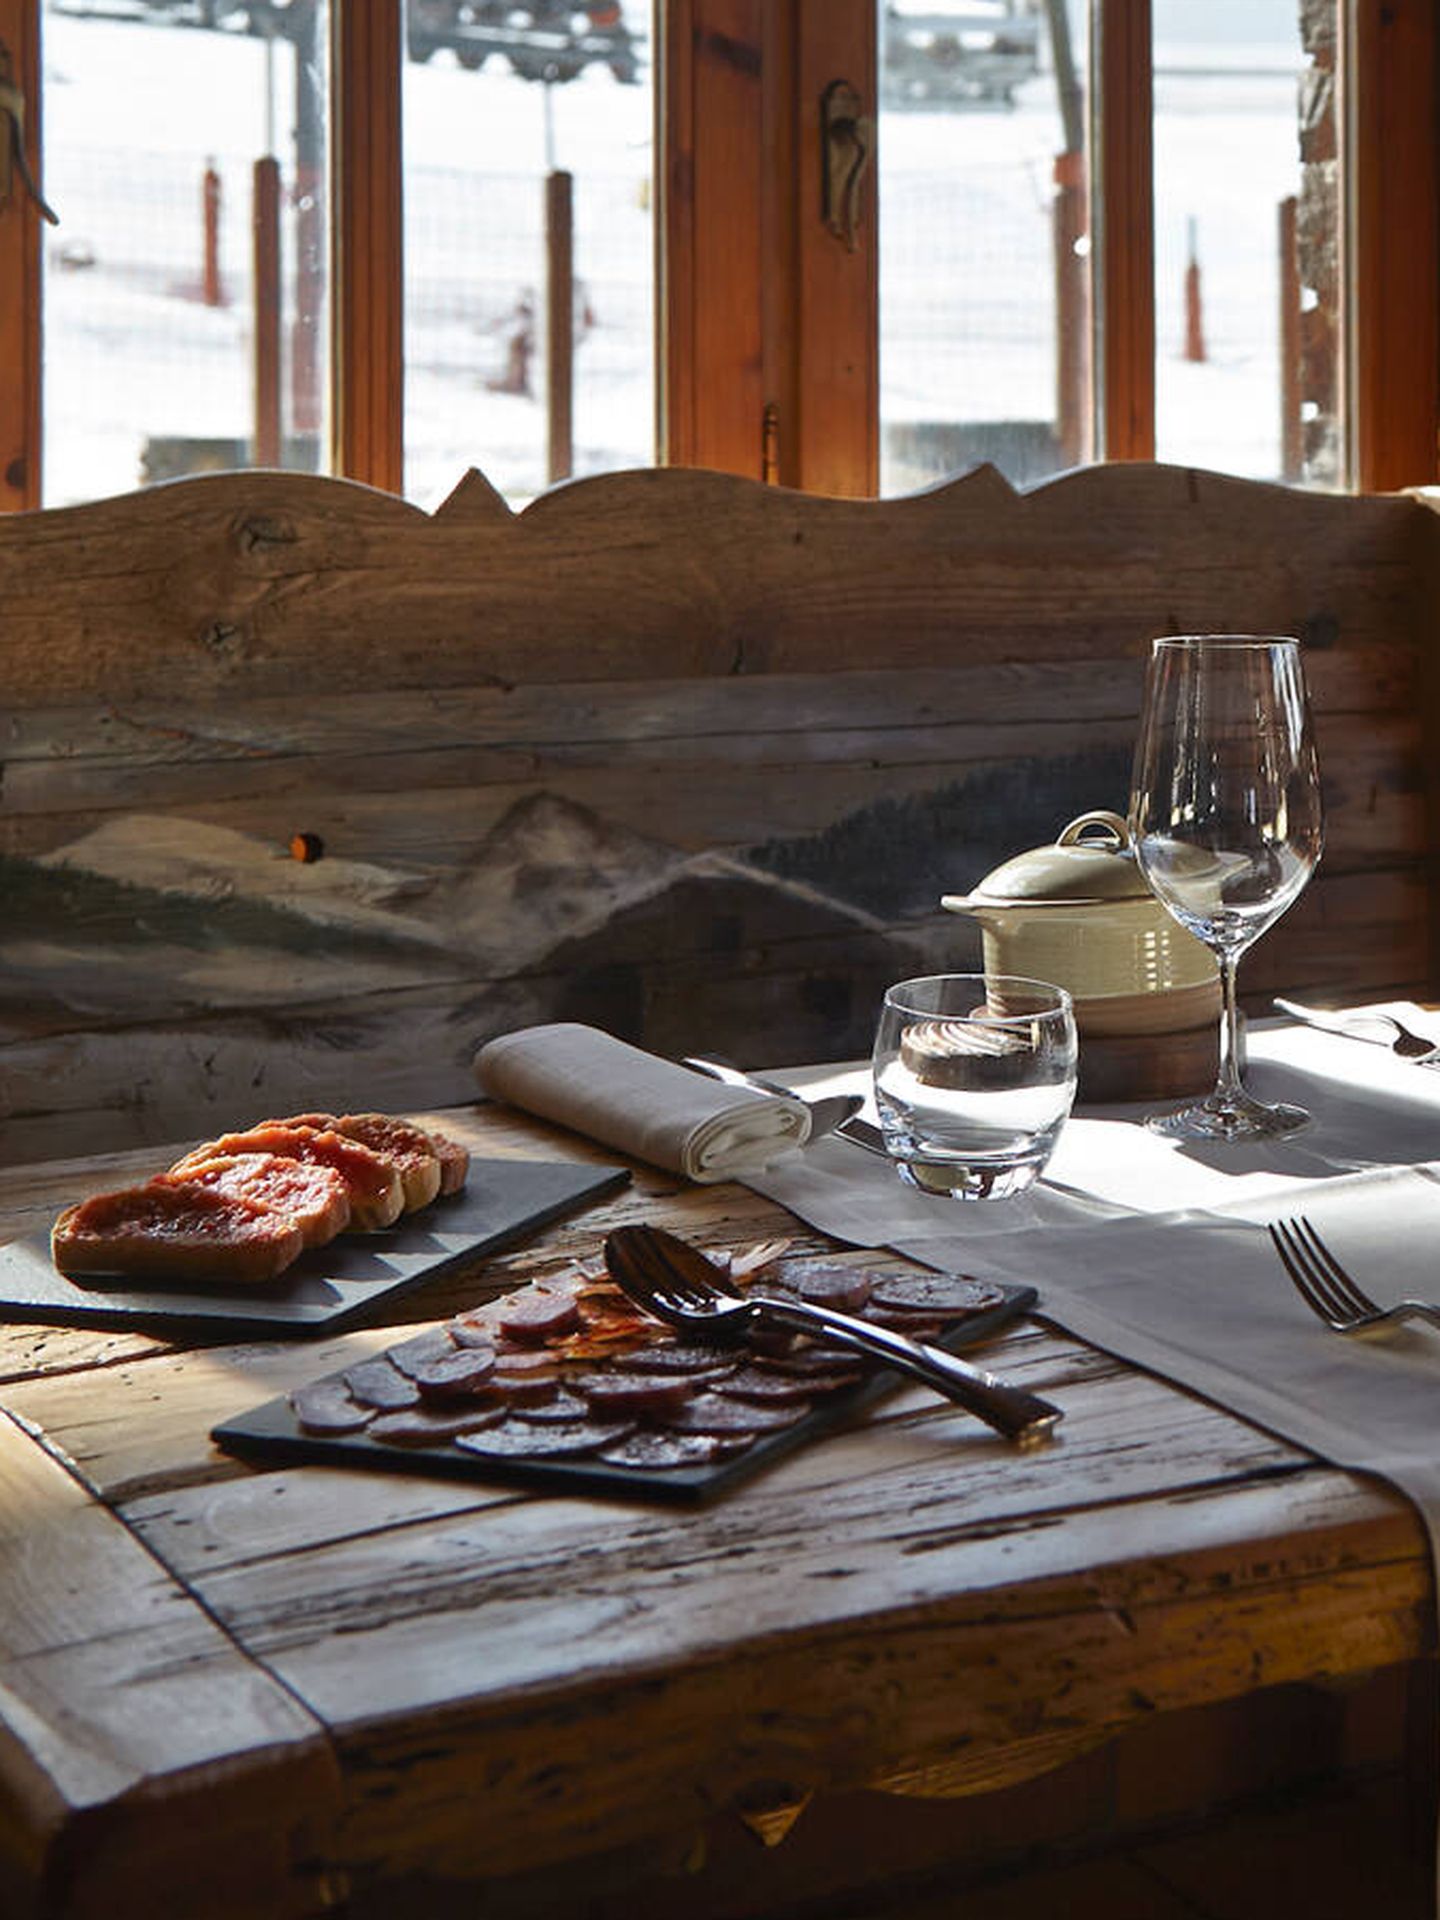 Gastronomía andorrana tradicional a la mesa. (Visit Andorra)